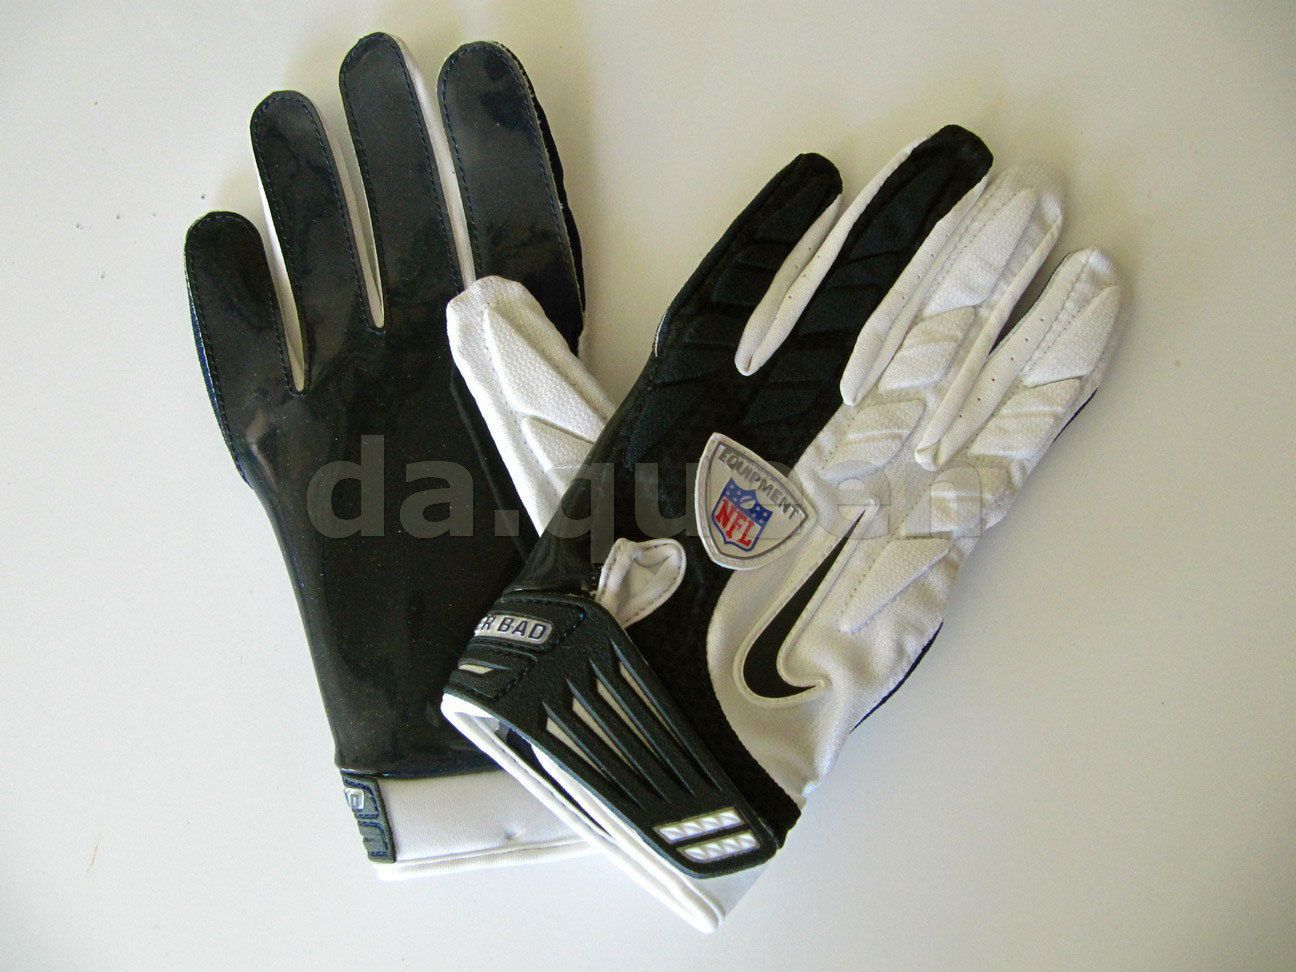 Mens Nike Superbad SG NFL Football Receiver Gloves White Gray Black 